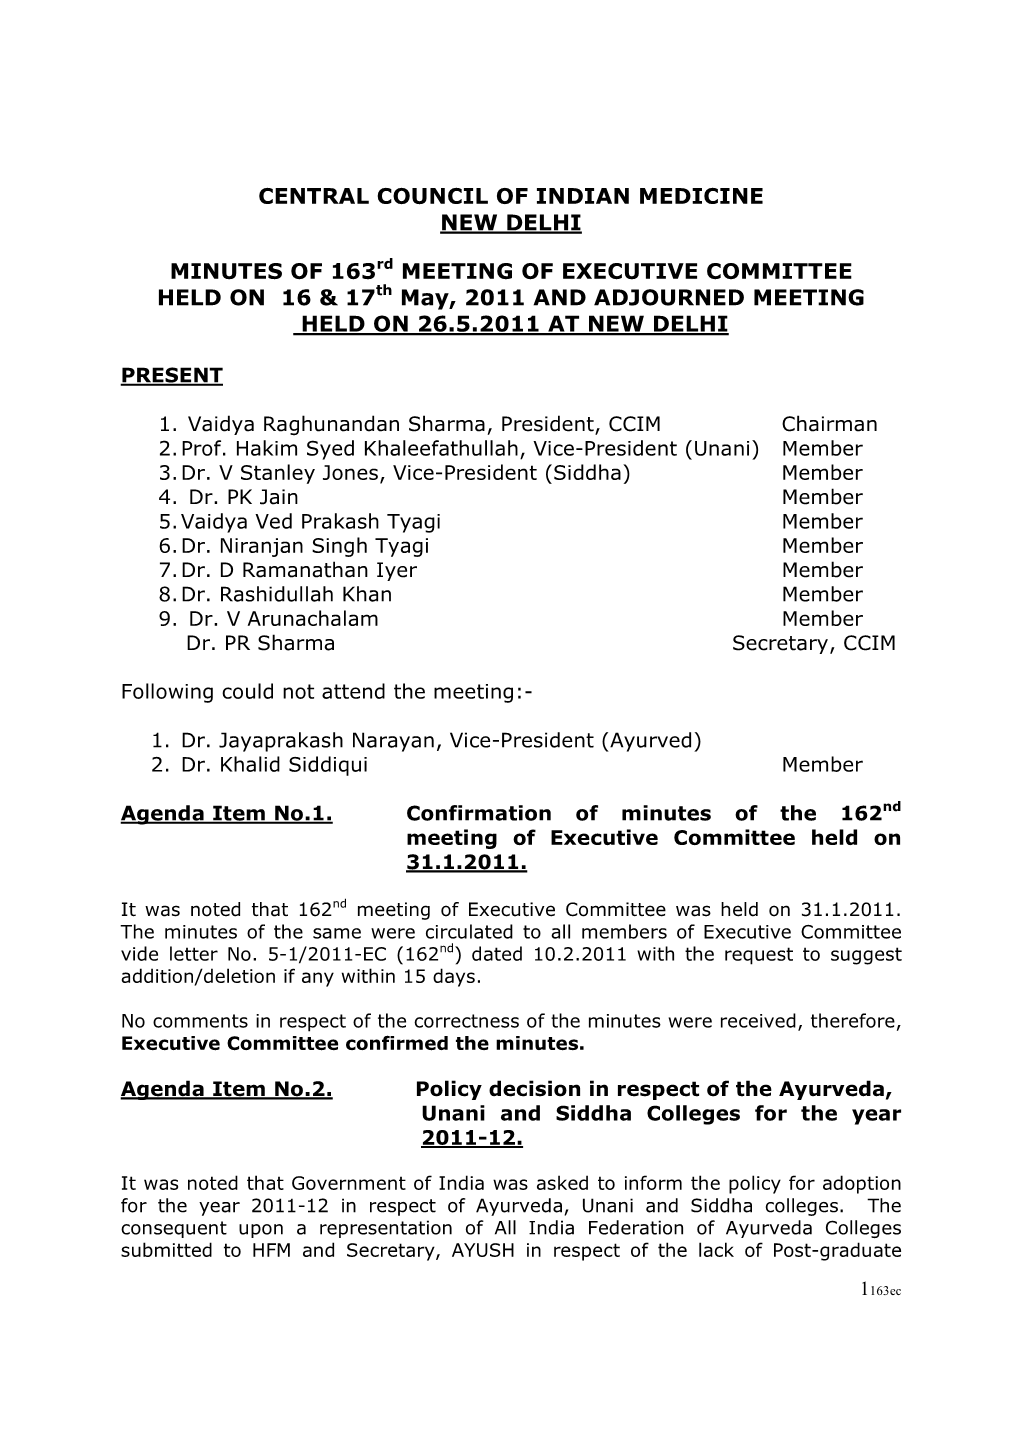 Central Council of Indian Medicine New Delhi Minutes